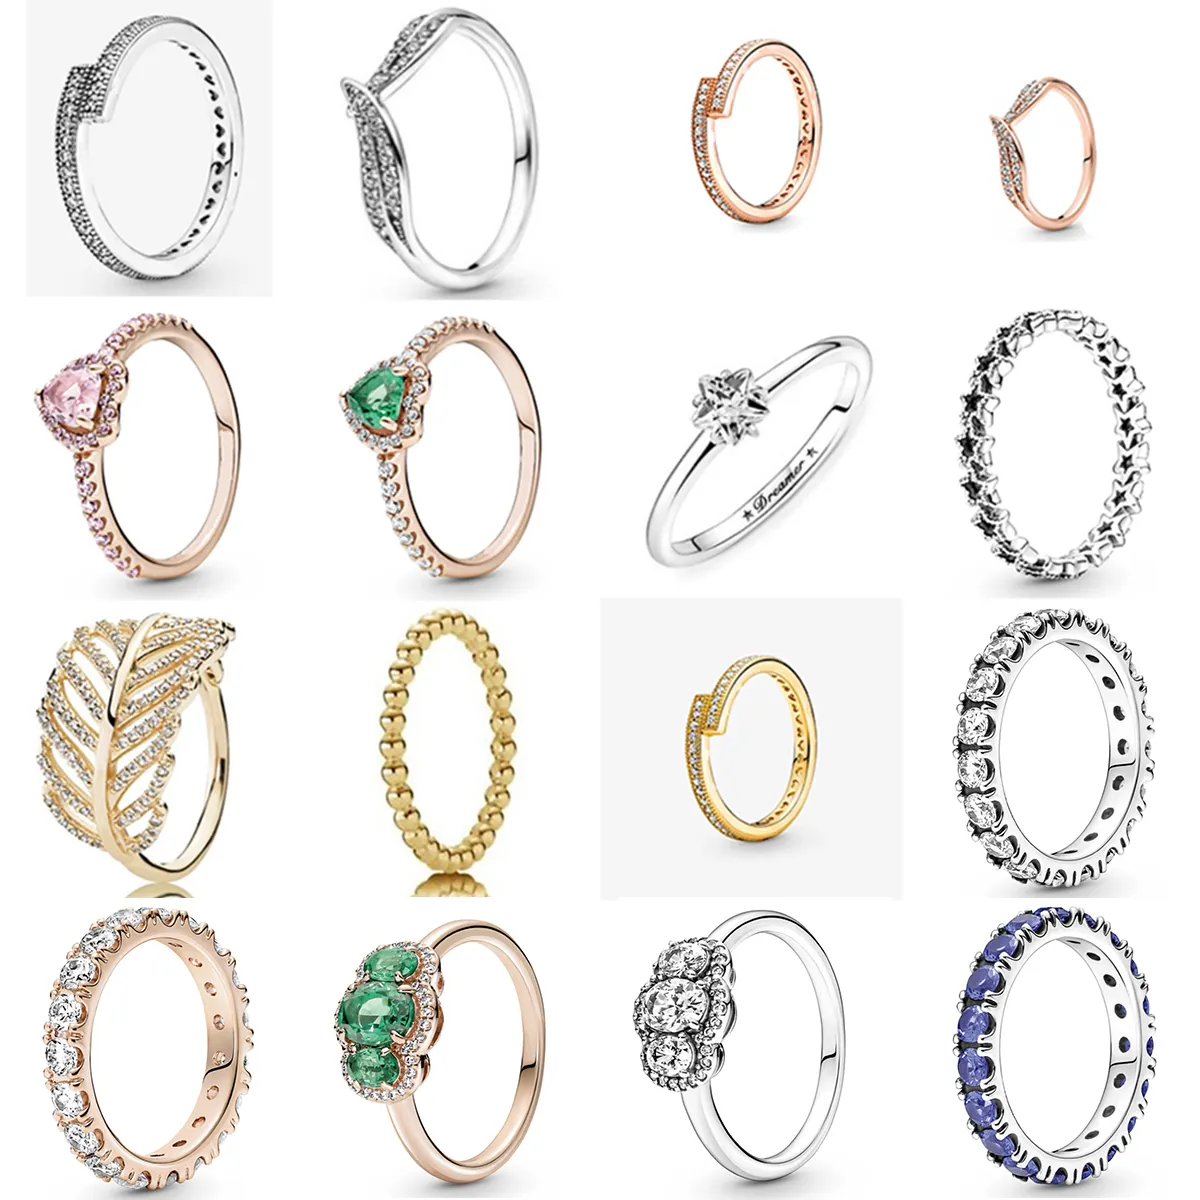 NEUE 2021 100% 925 Sterling Silber Winter Neue Stil Serie Sammeln Ring Fit Europäischen Frauen Luxus Original Mode Schmuck Geschenk